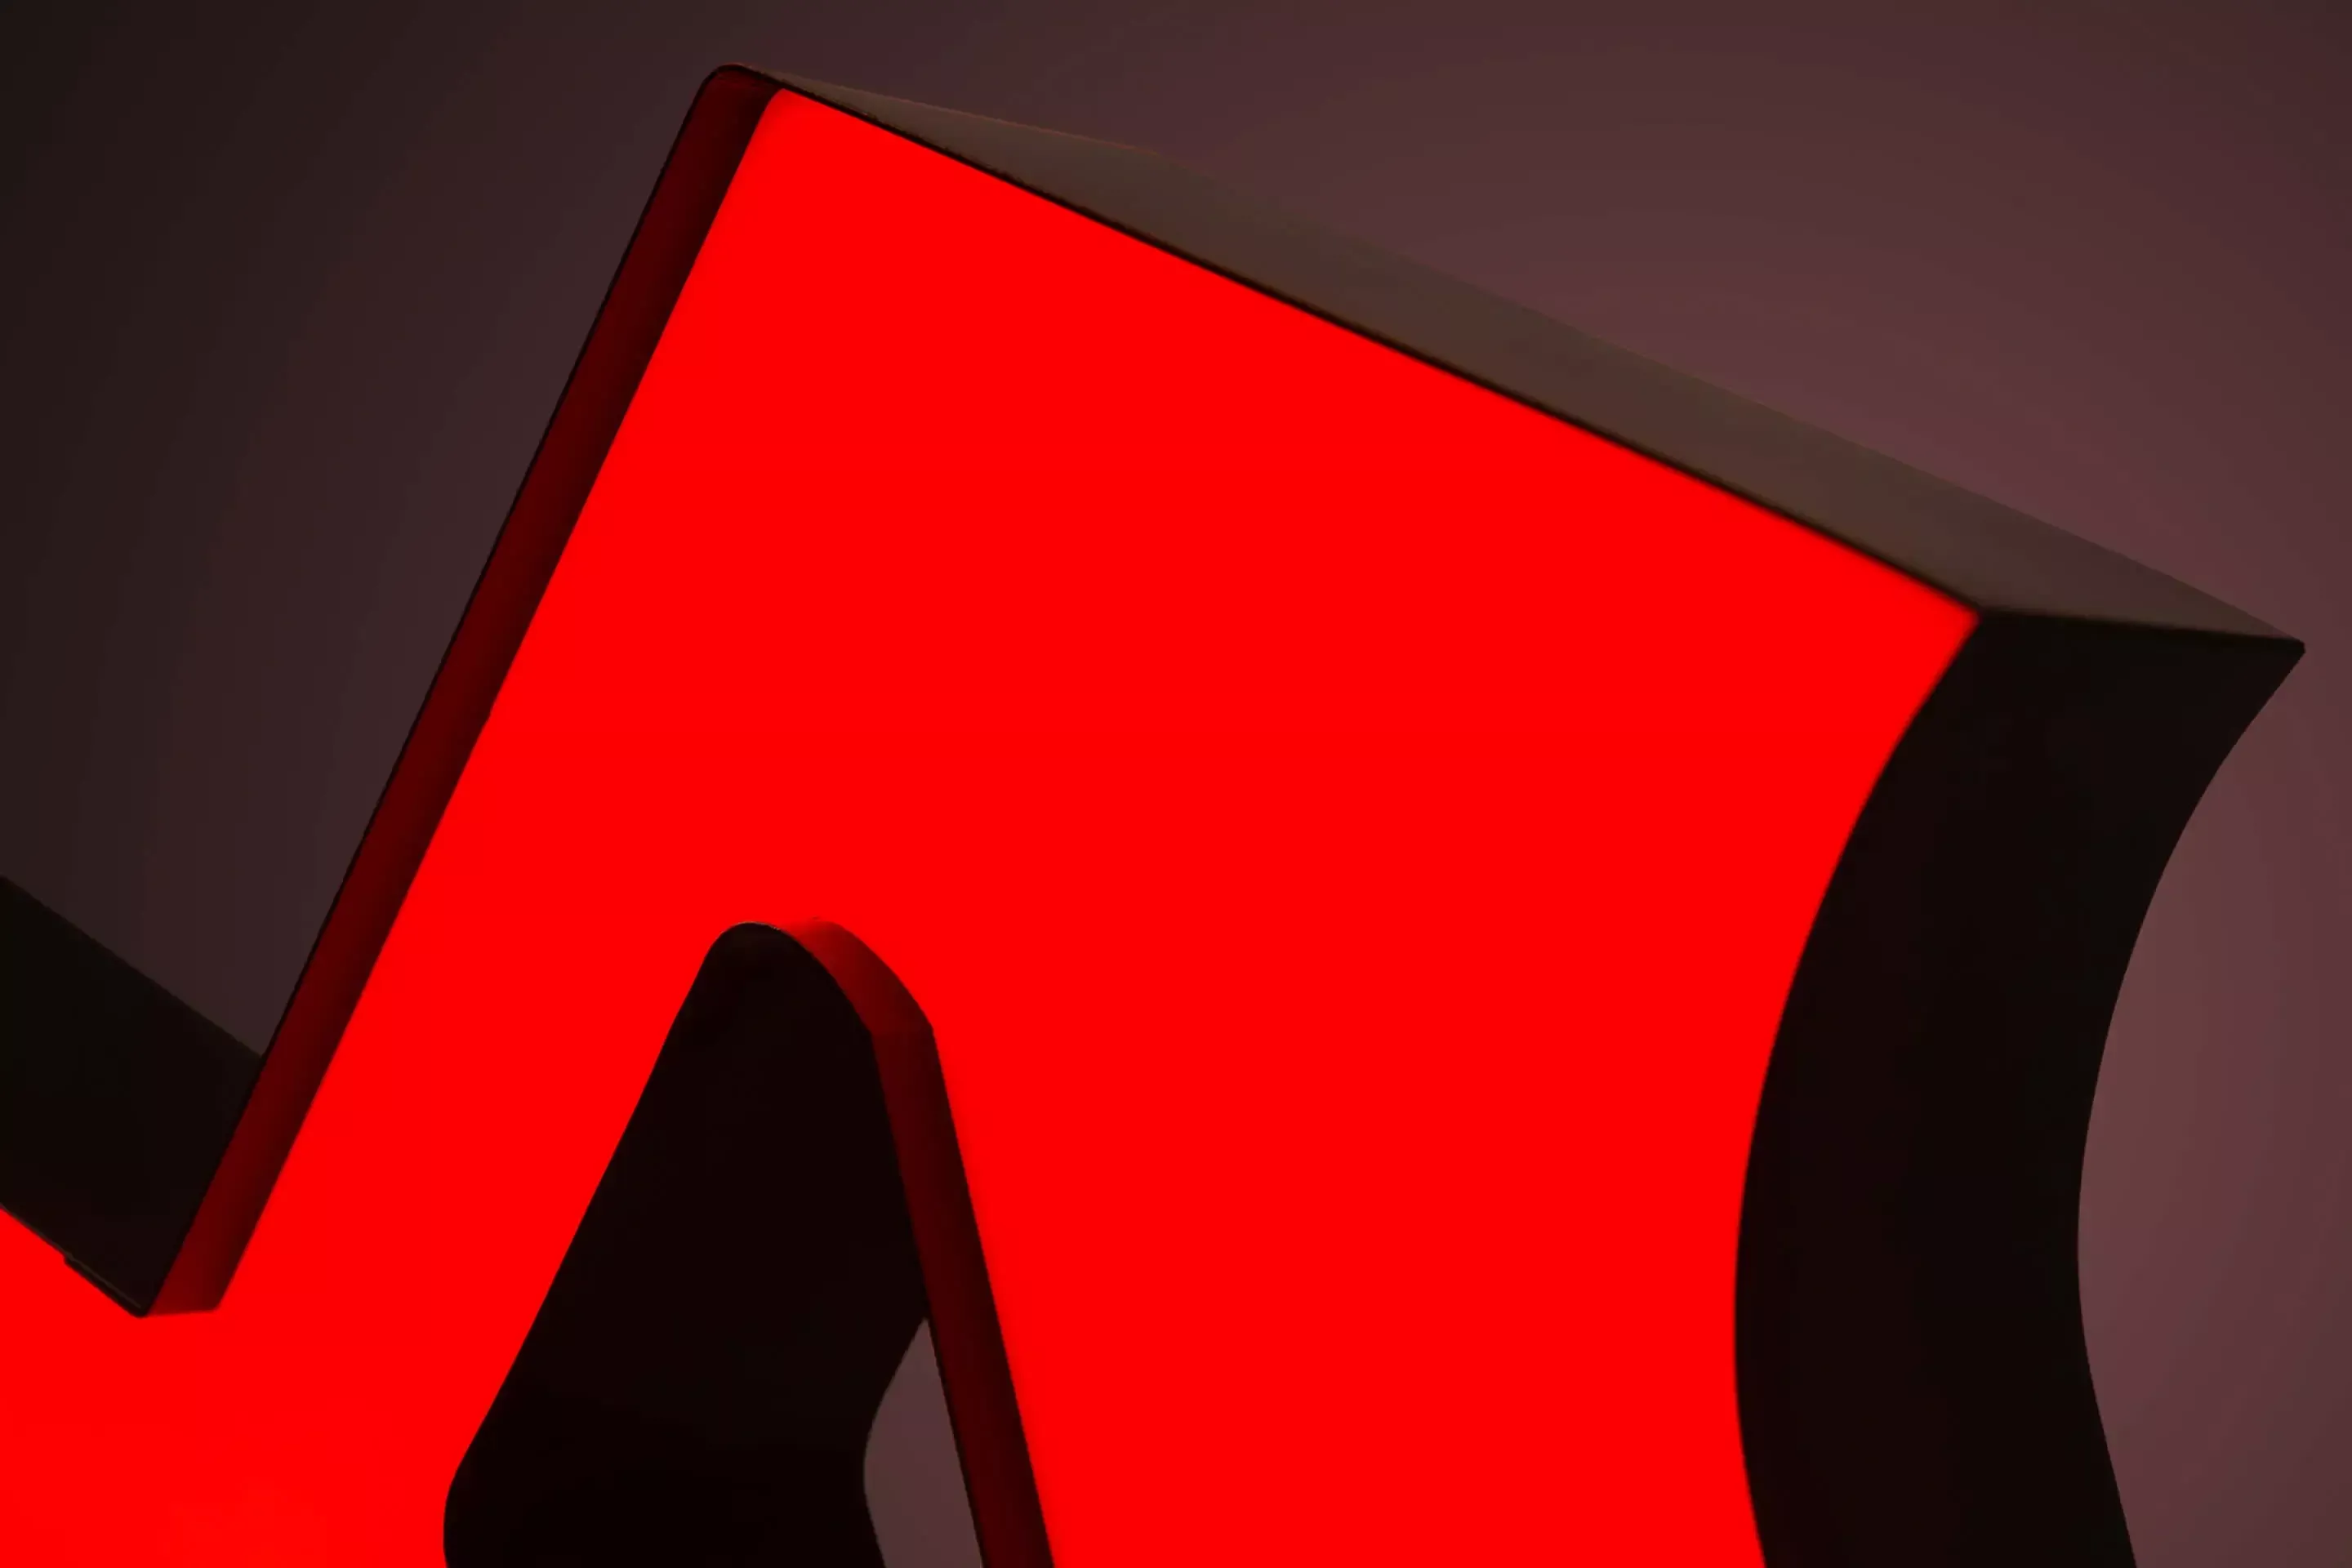 Lettera M - lettera personalizzata illuminata a LED in rosso